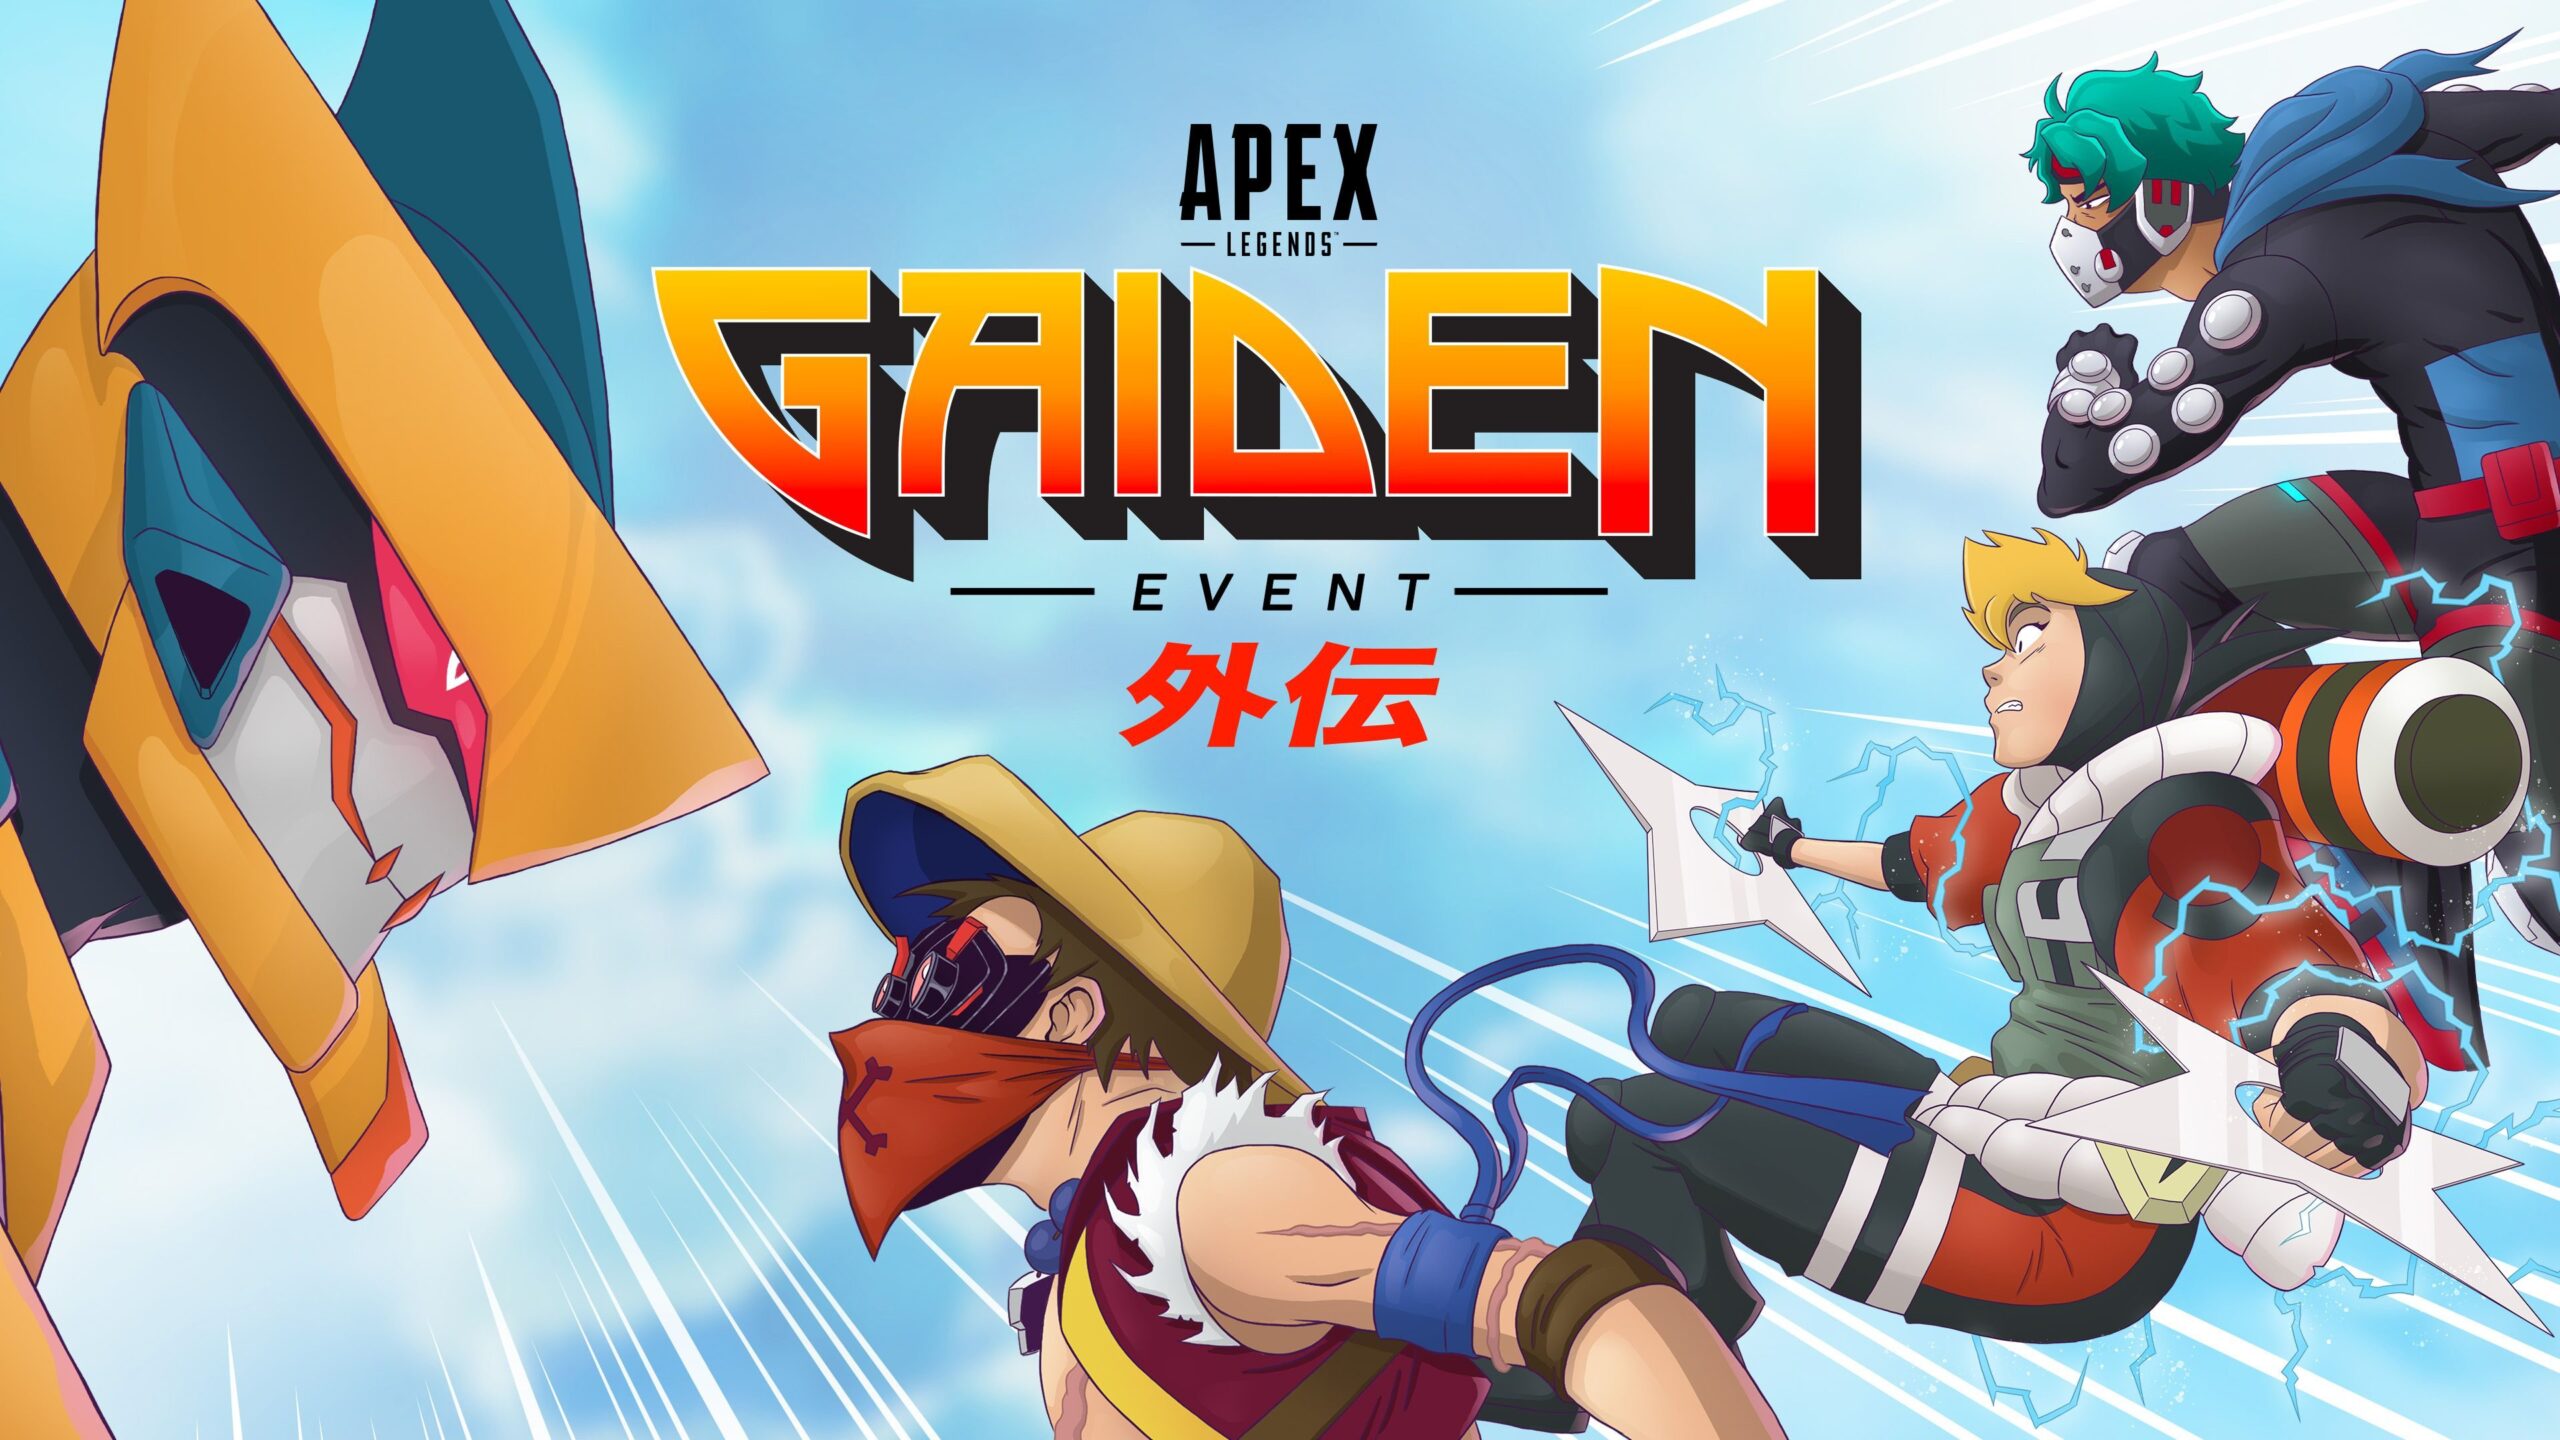 Разработчики Apex Legends анонсировали новое тематическое событие с бесплатными наградами и спецпредложениями — «Гайден»